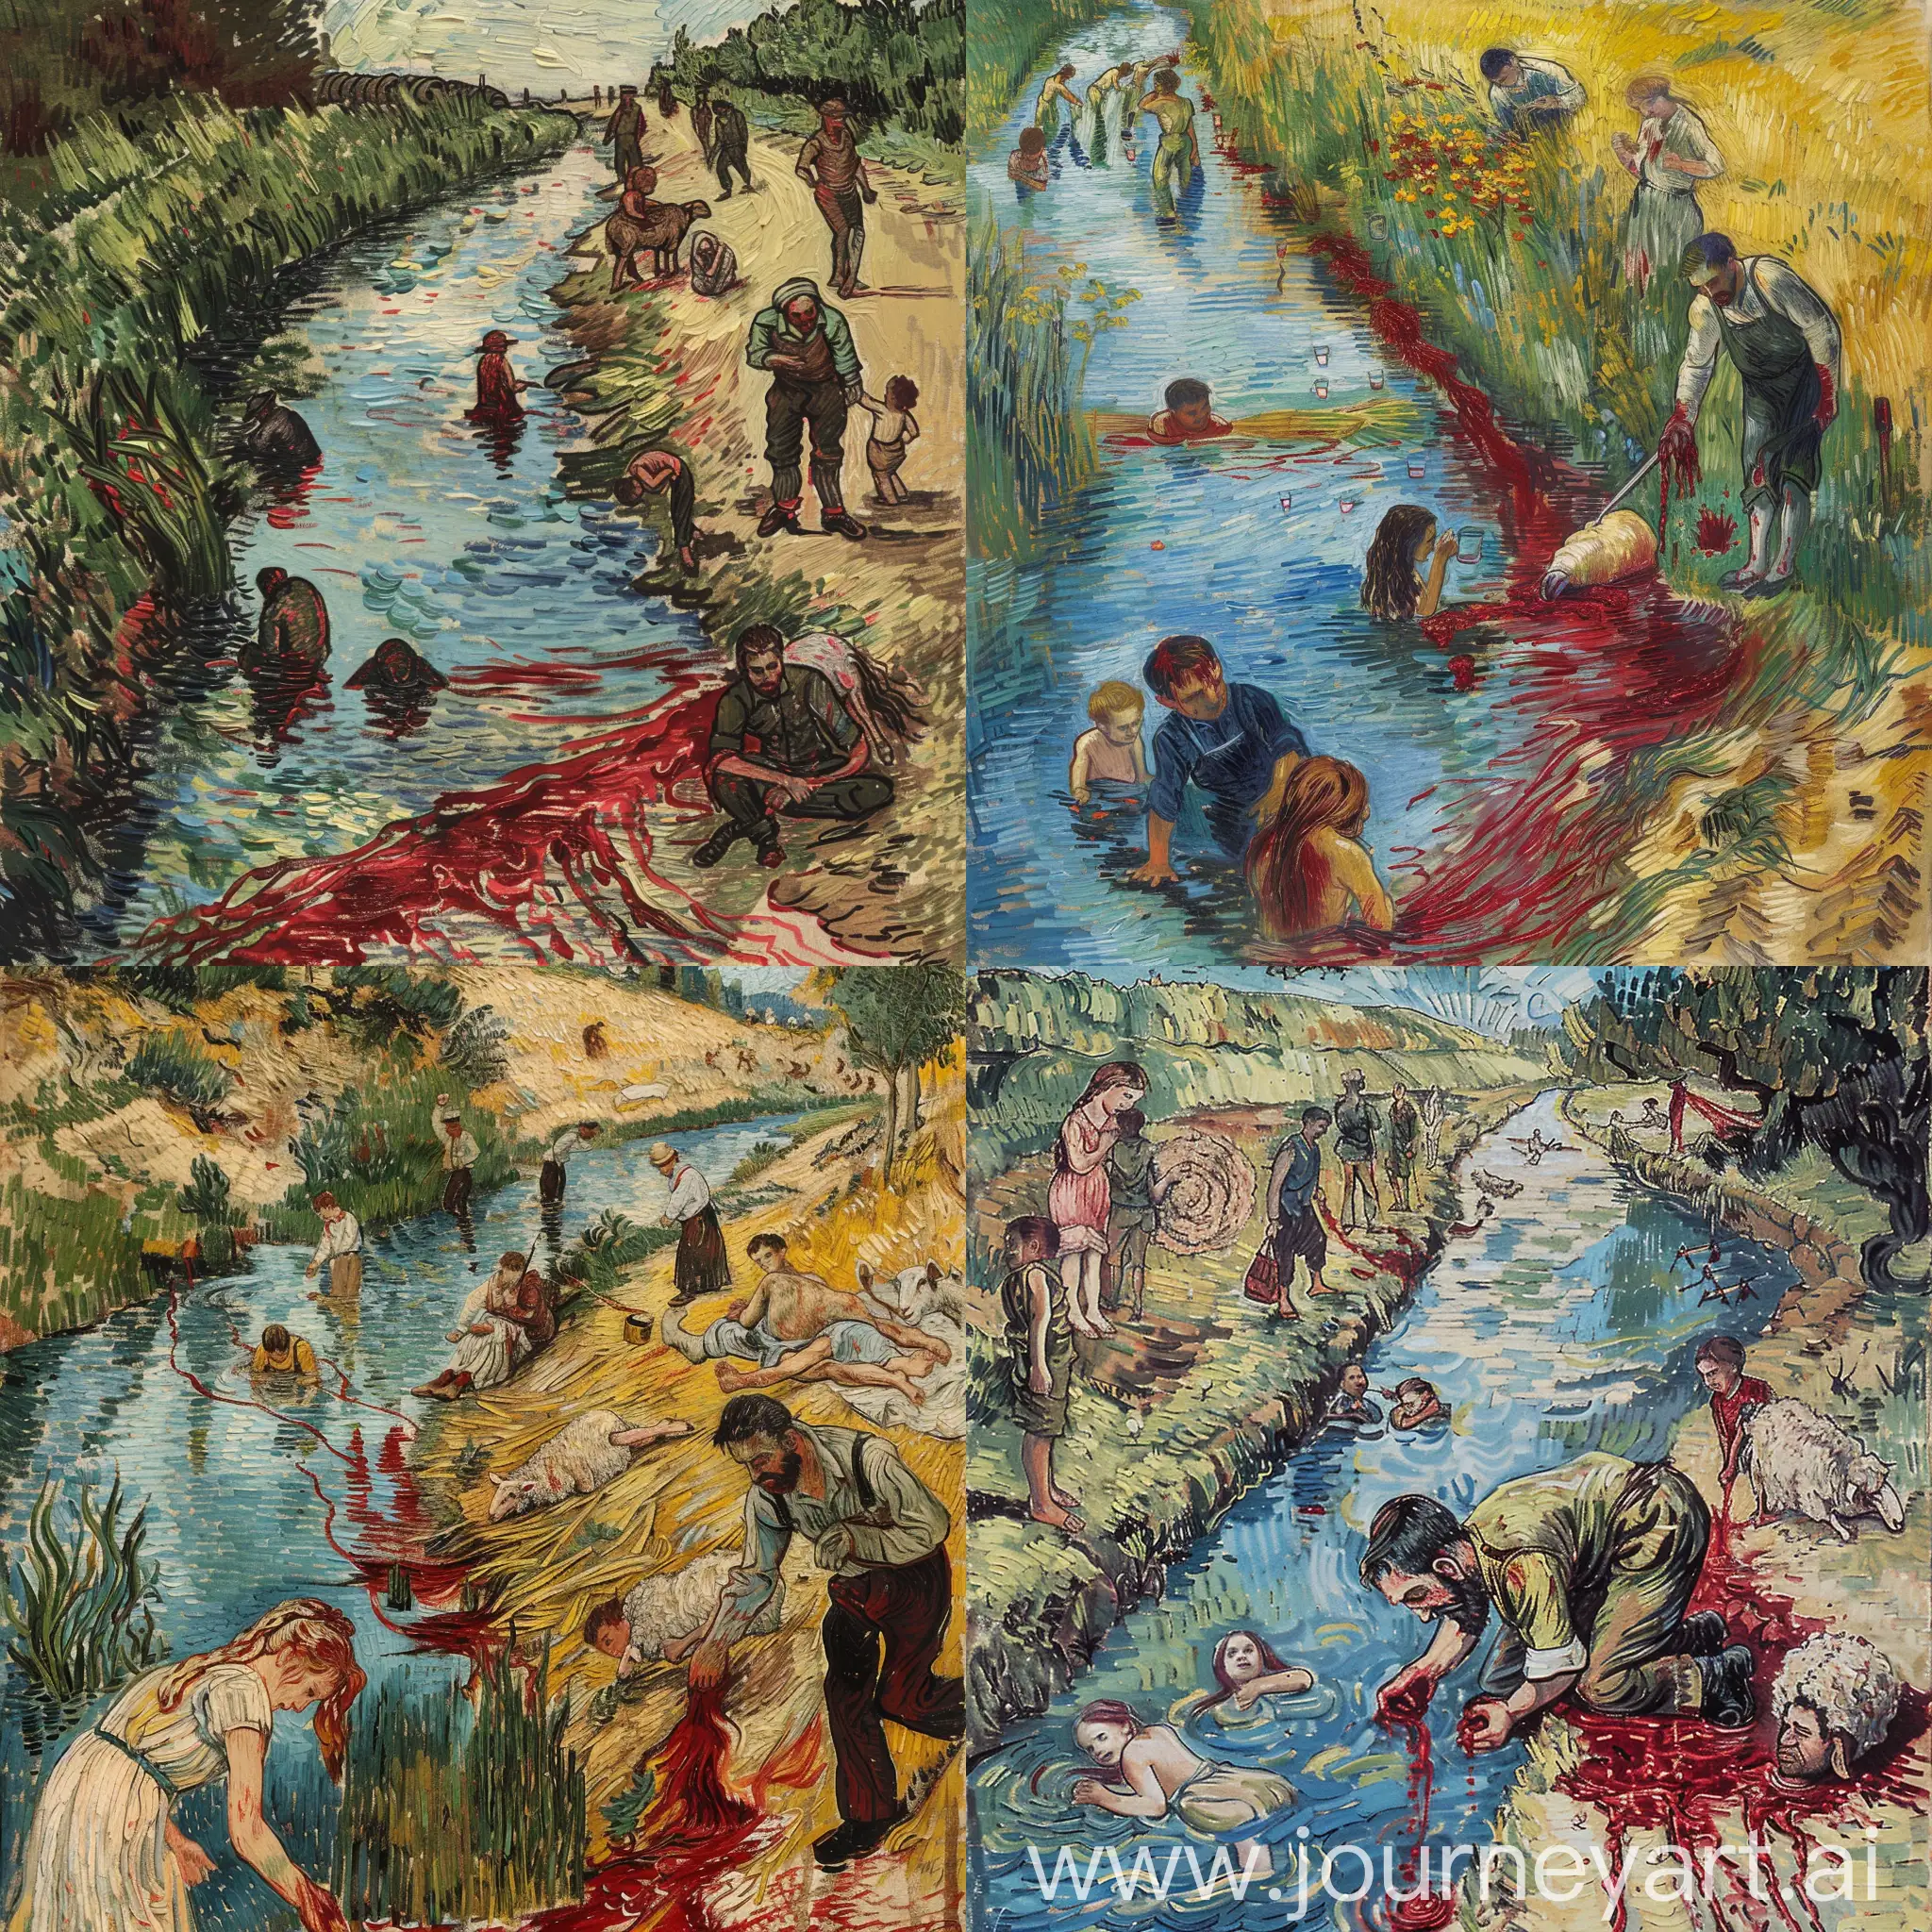 La passion de Van Gogh , au lieu du passage une rivière , sur la côte droite un homme en train d'égorger un mouton pour fêter Eid al-Adha et le song coule dans la rivière et des enfants qui jouent , et sur la côte gauche narcisse en train de voir son reflet, des soldats en train de boire du rivière et une femme qui dense l'orientale avec des cheveux longs extesion de la rivière